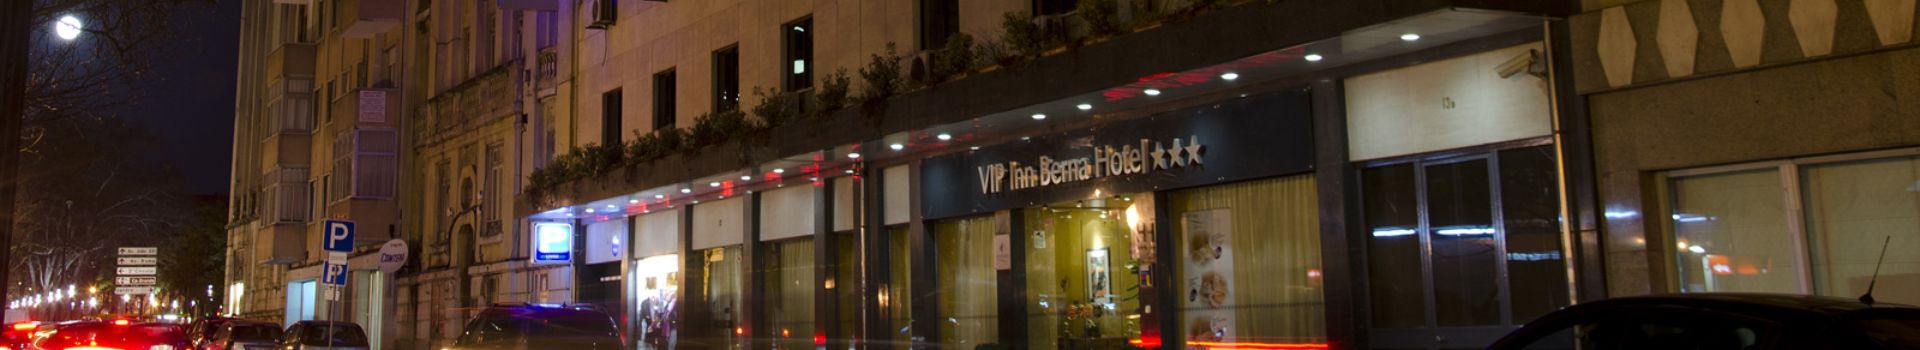  VIP Inn Berna  Lisboa